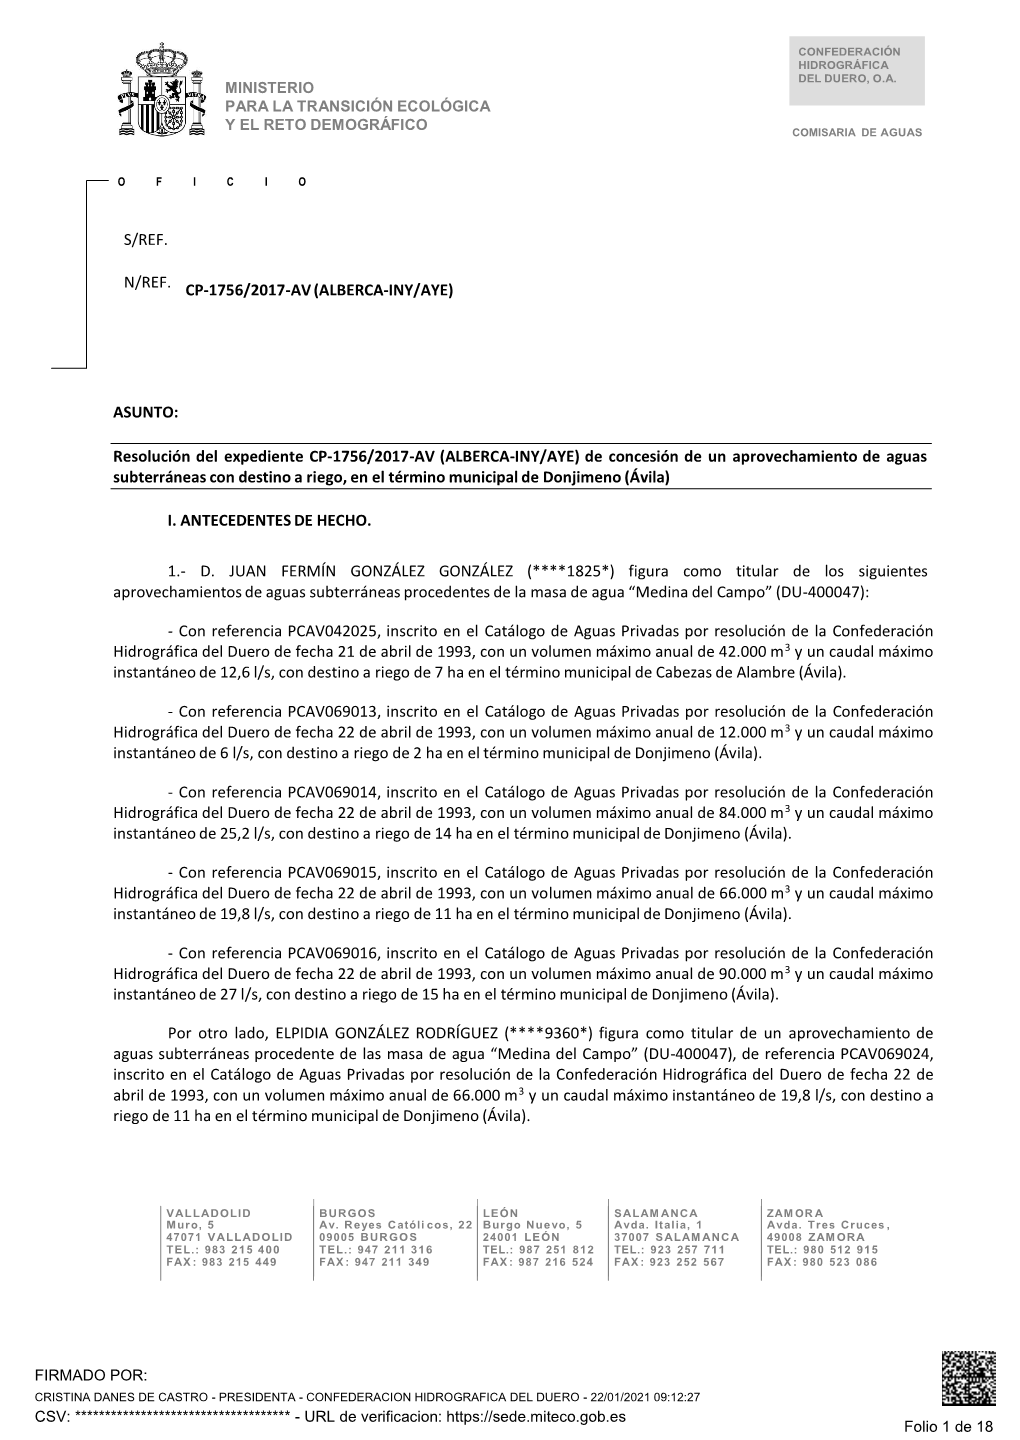 Resolución Del Expediente CP-1756/2017-AV (ALBERCA-INY